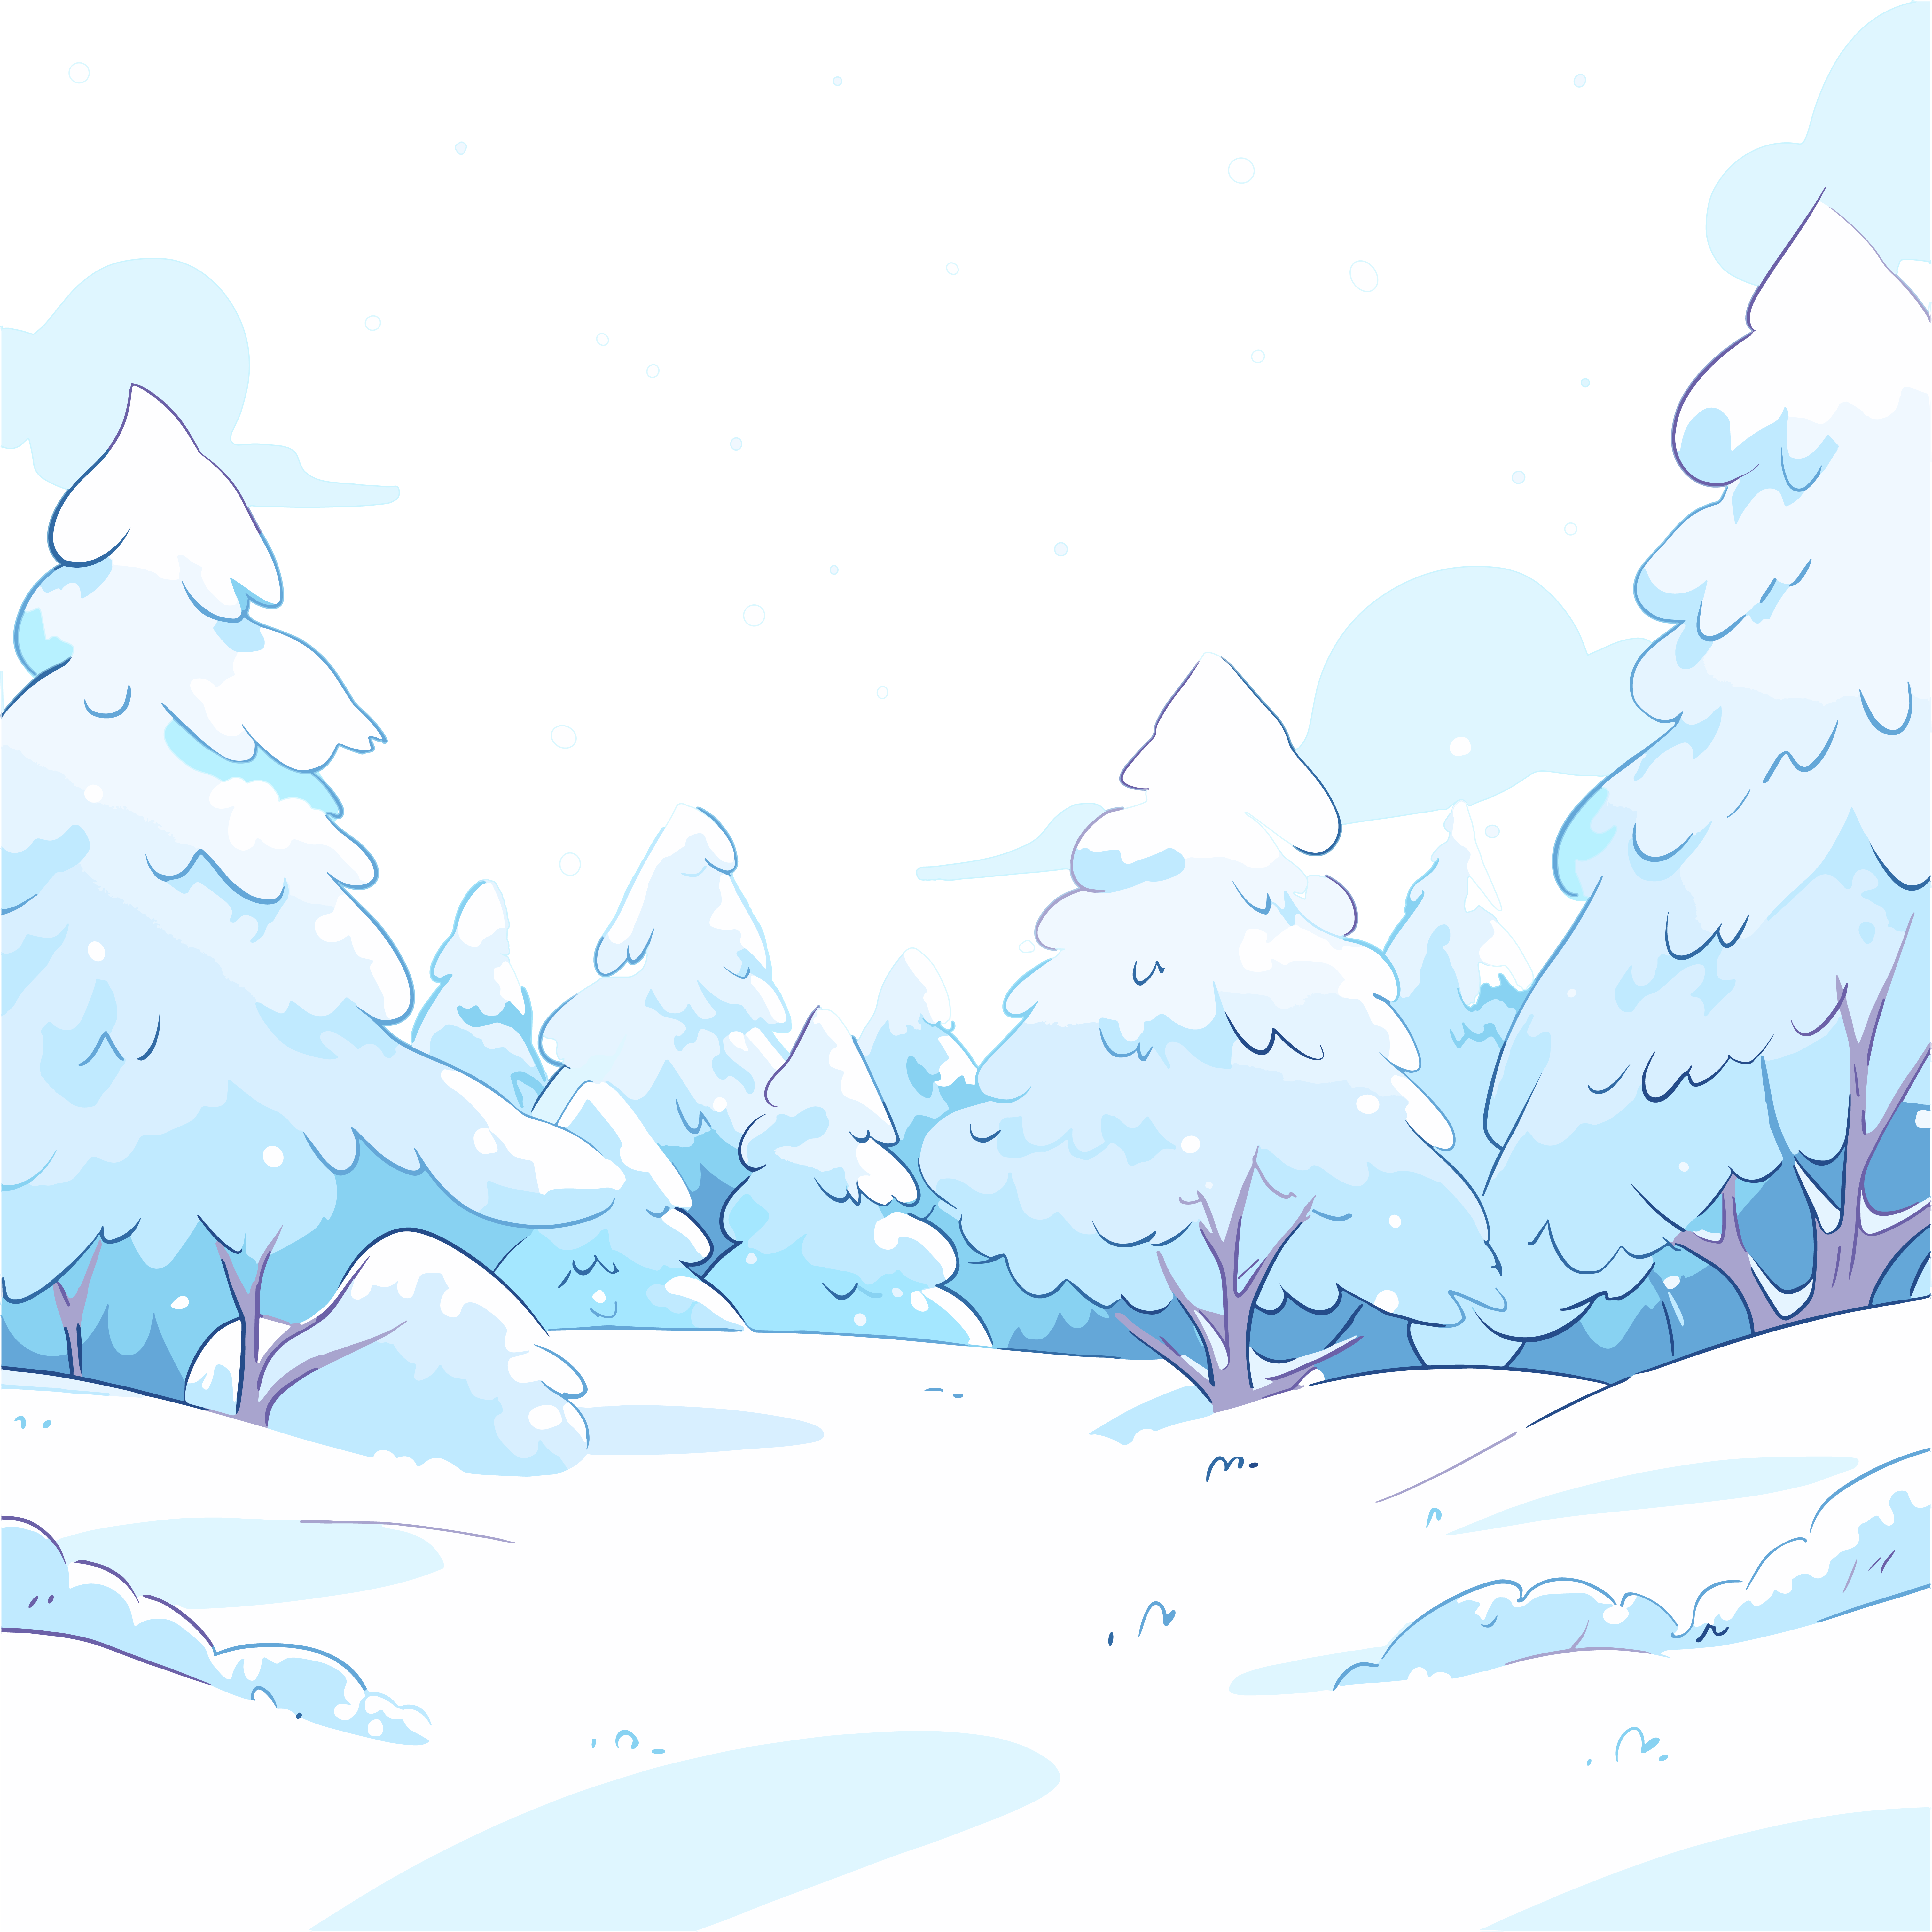 雪景手绘图形素材